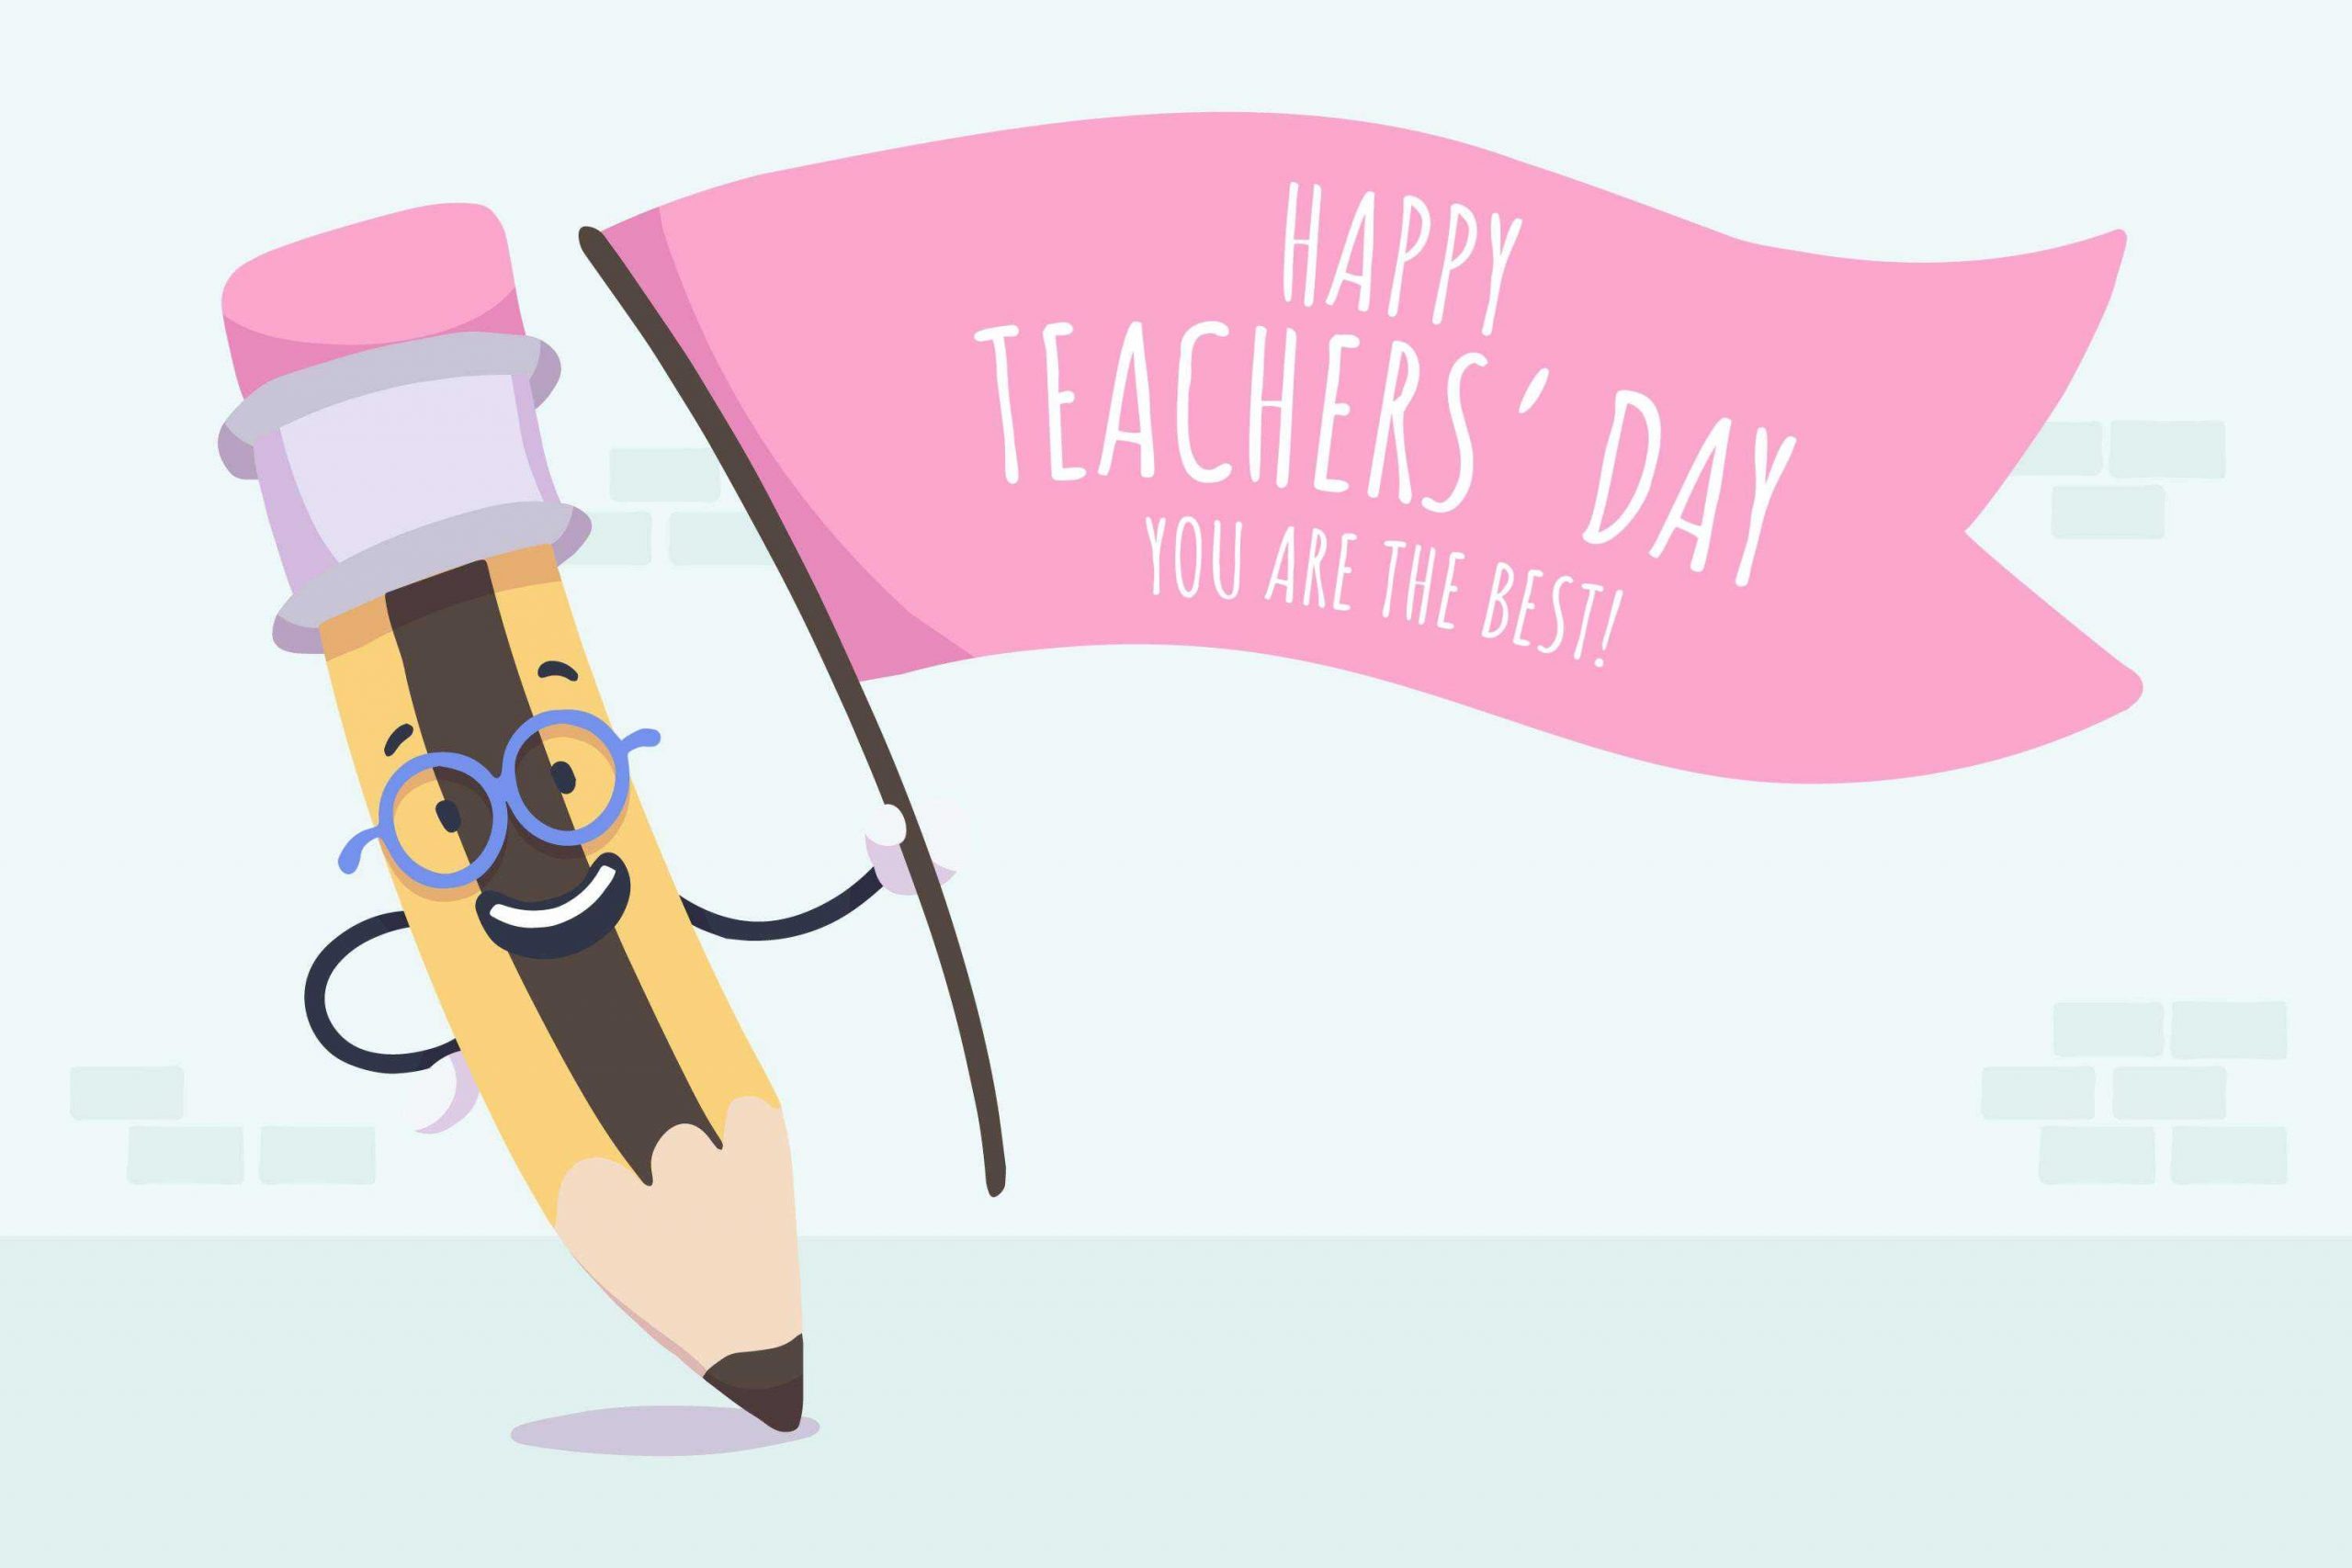 Happy Teacher's Day wallpaper download 